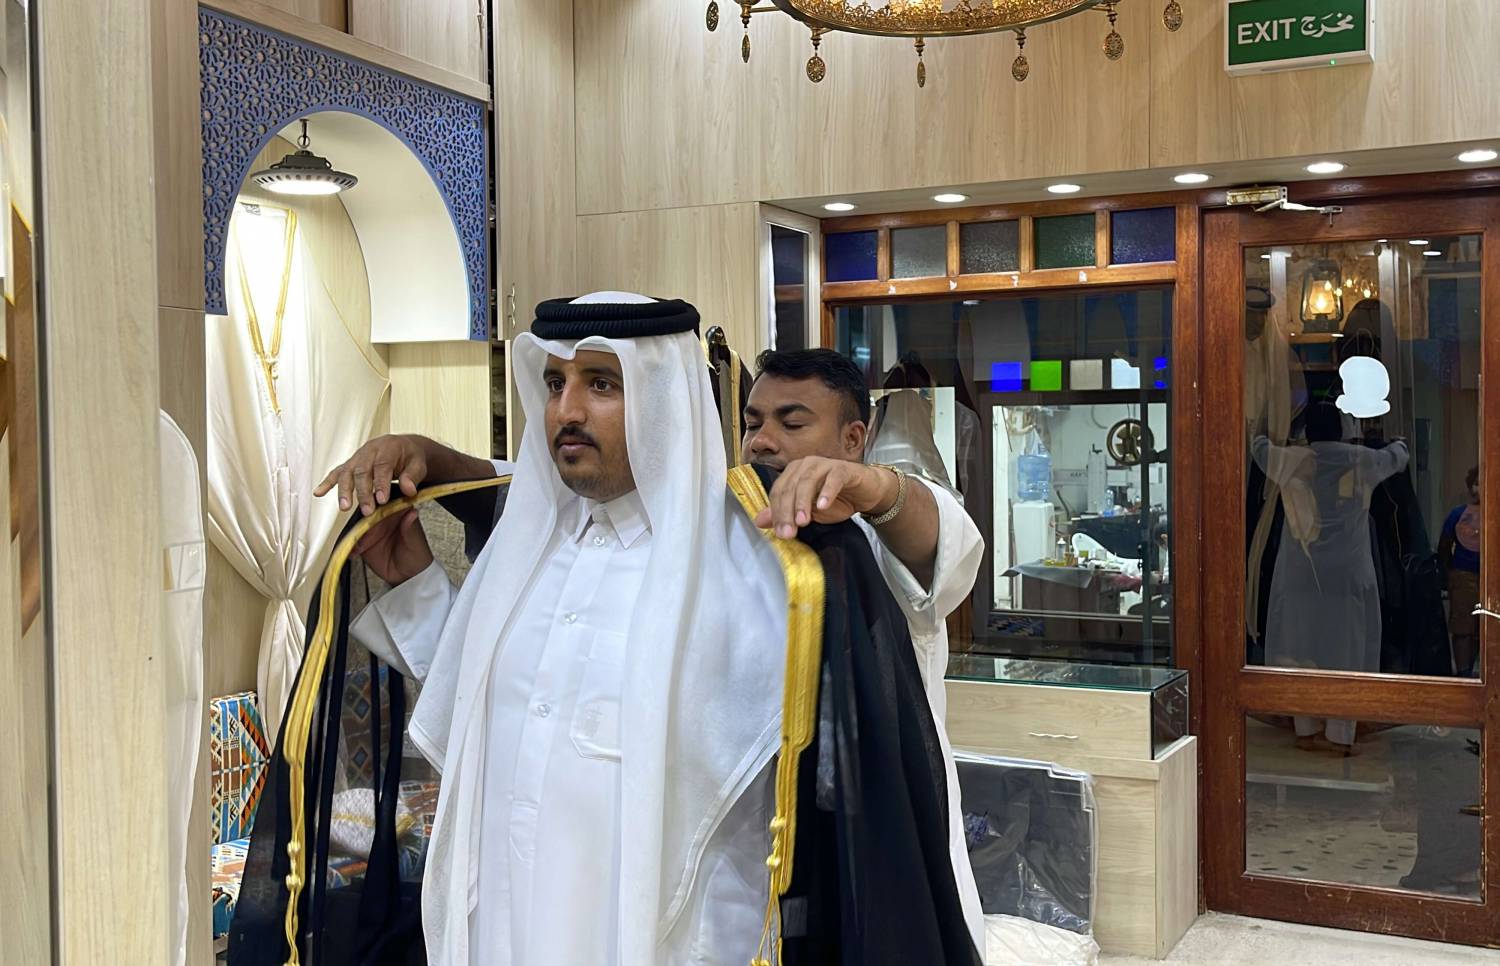 البشت عبارة عن عباءة يرتديها الرجال العرب منذ القِدم، مازال يستخدم في دول الخليج (تواصل اجتماعي)